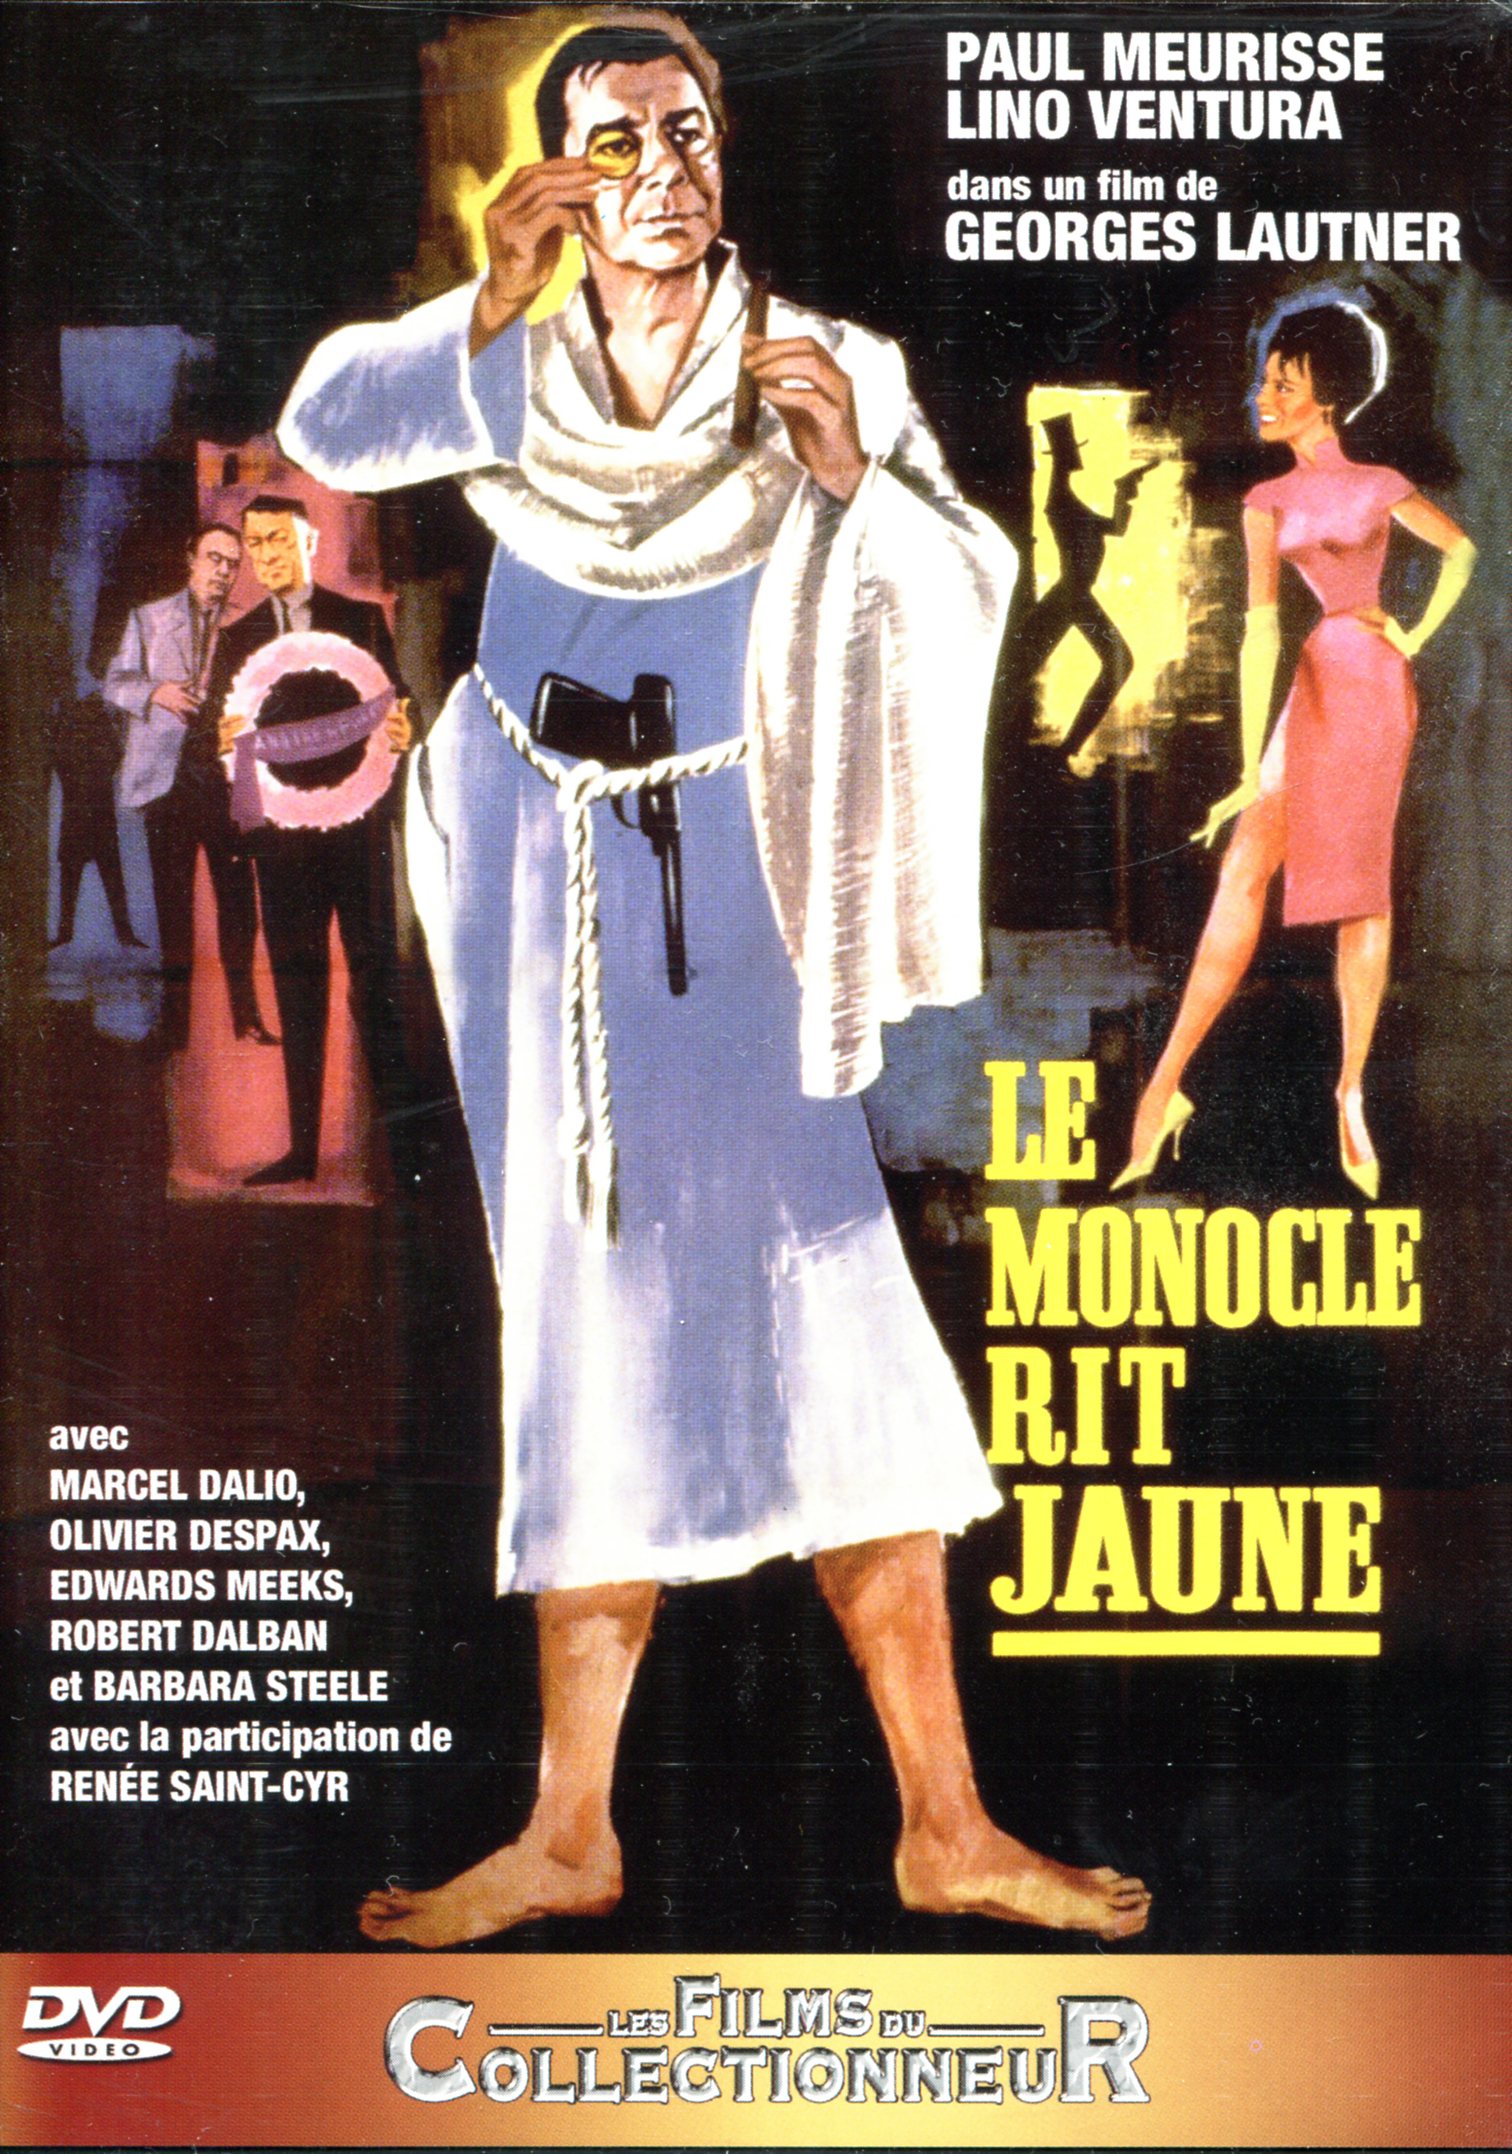 1964 Lautner Le Monocle rit jaune.jpg